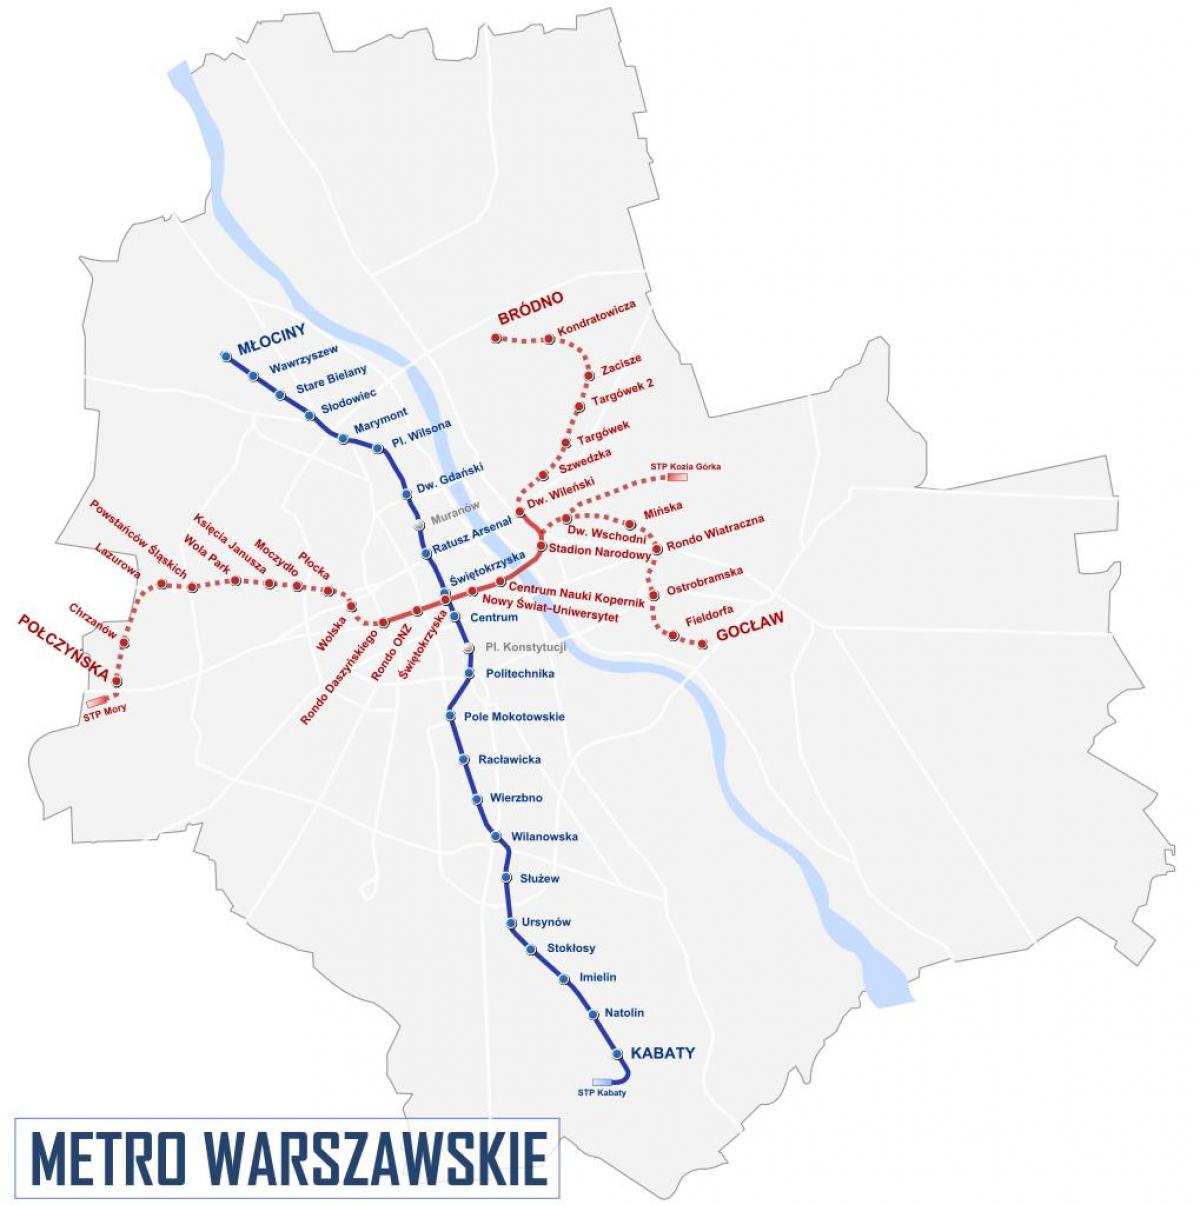 Зураг Варшав метро 2016